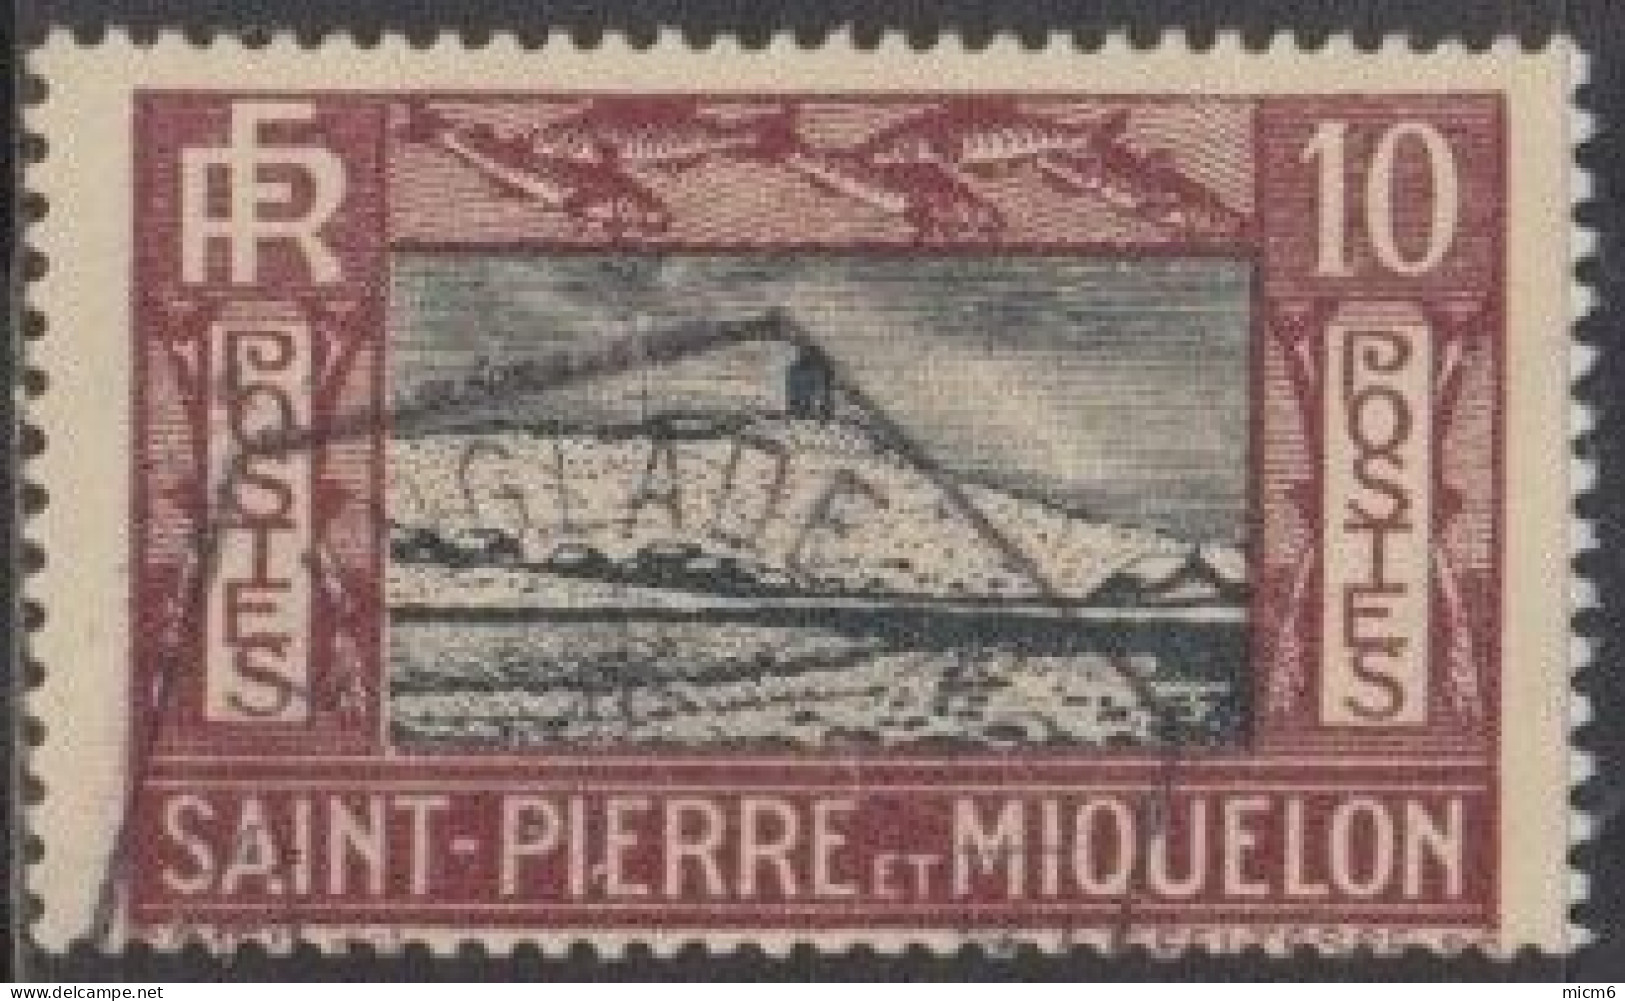 Saint-Pierre Et Miquelon 1910-1939 - N° 140 (YT) N° 143 (AM) Oblitéré De Langlade. - Used Stamps